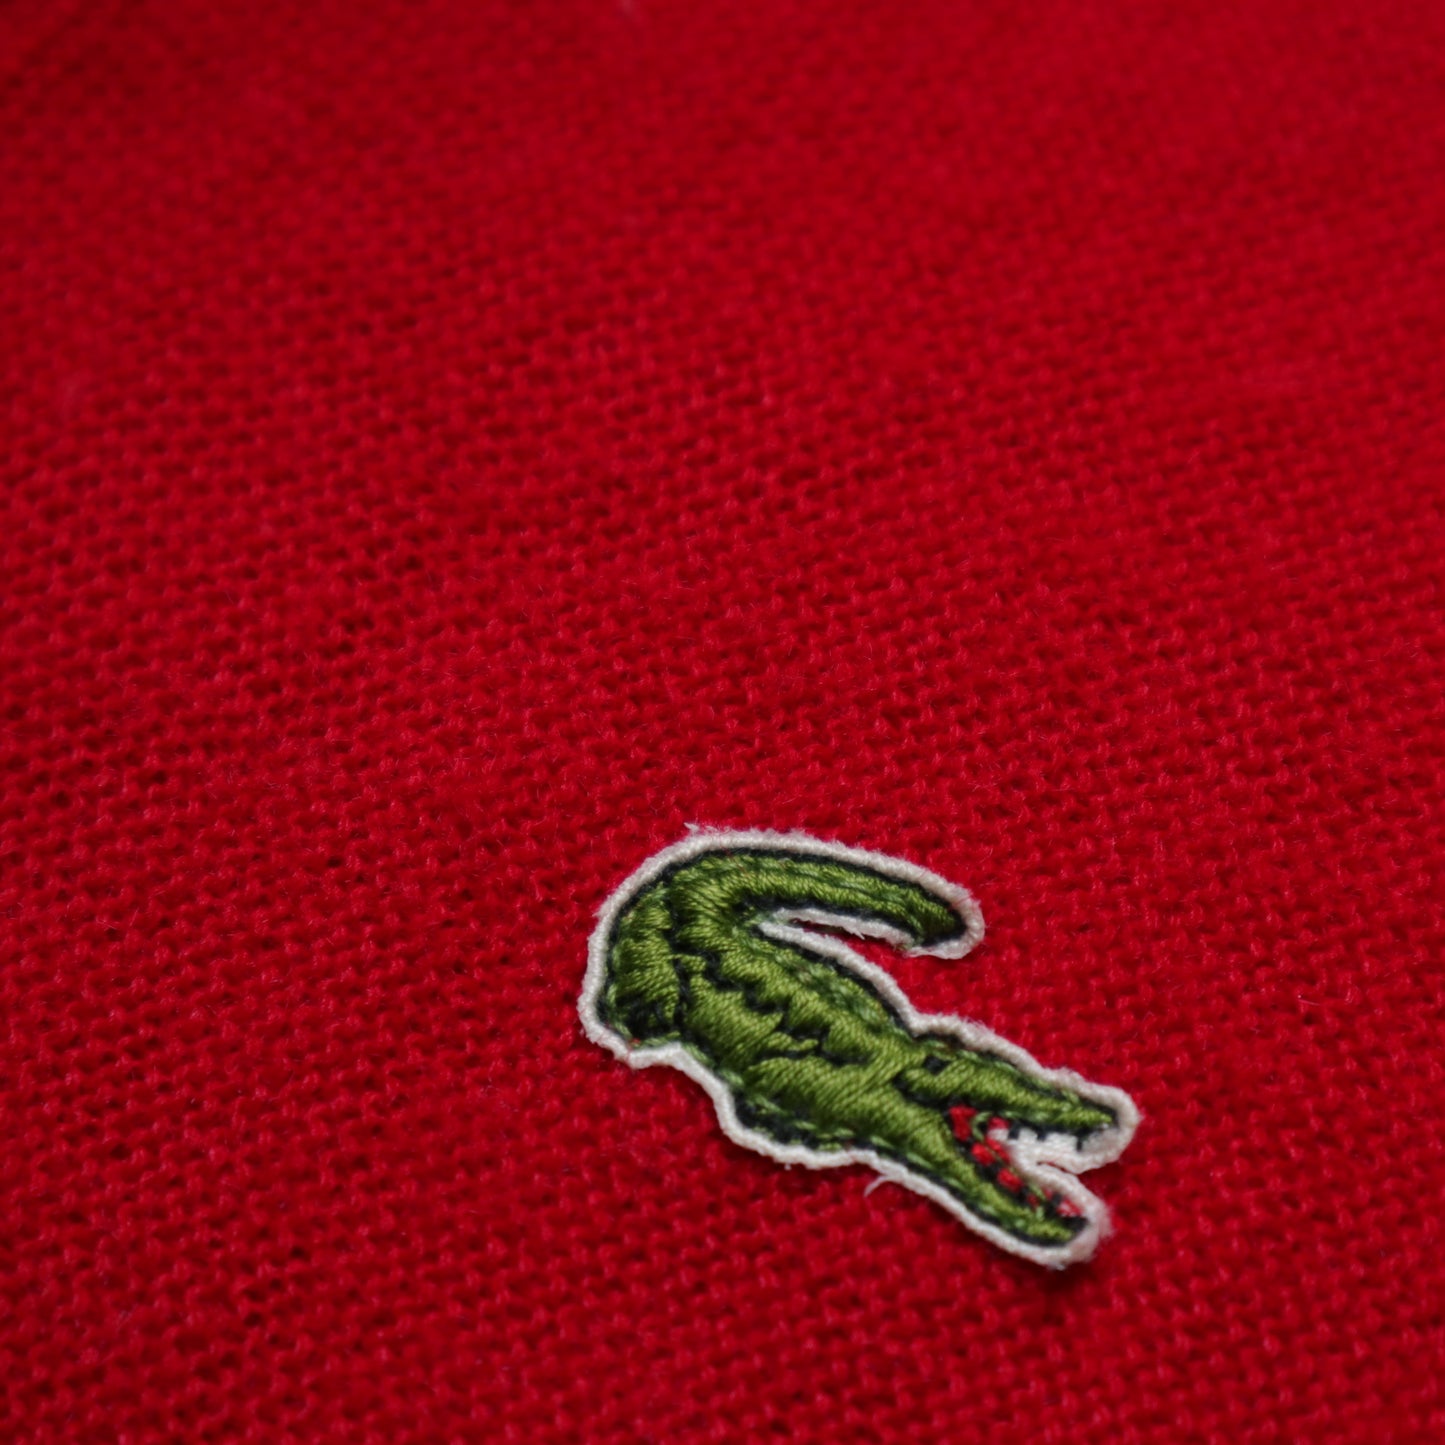 1980s Lacoste IZOD 美國製 紅色V領針織衫